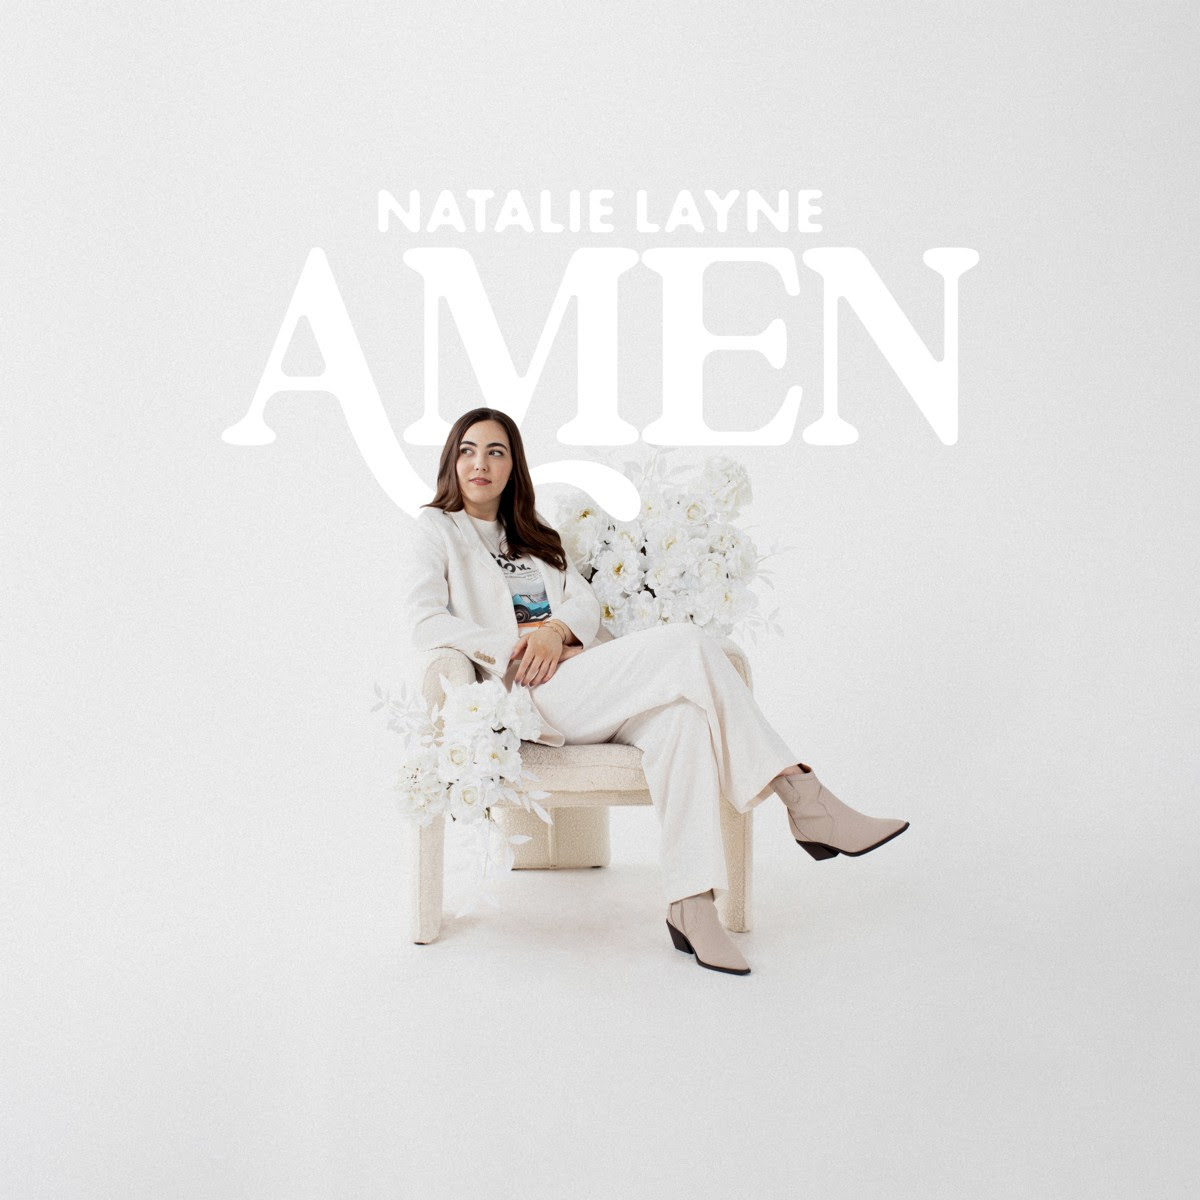 Natalie Layne album image courtesy of Hoganson Media